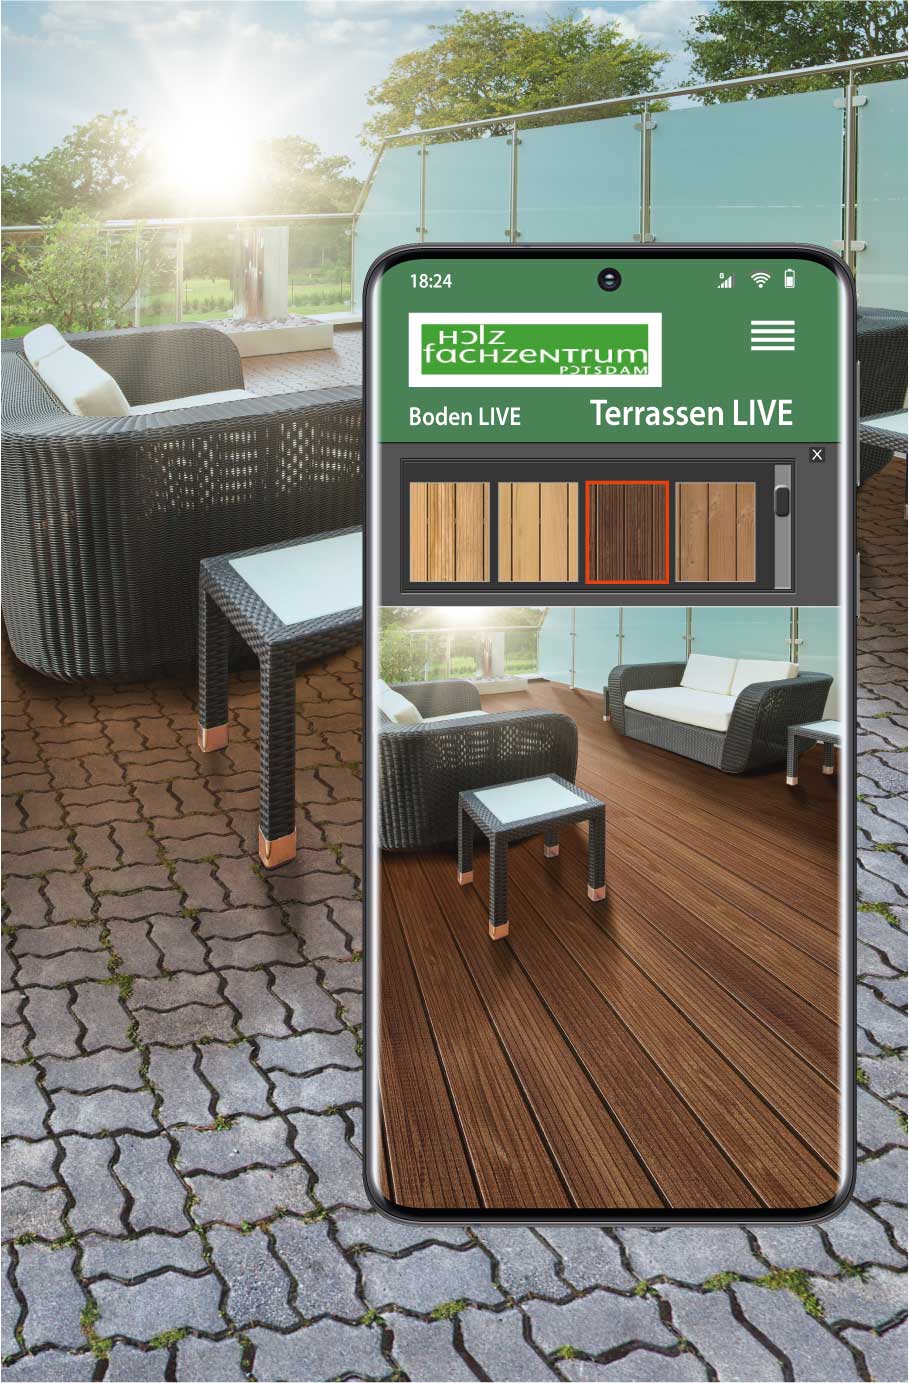 Terrasse LIVE - ein Service vom Holzfachzentrum Potsdam